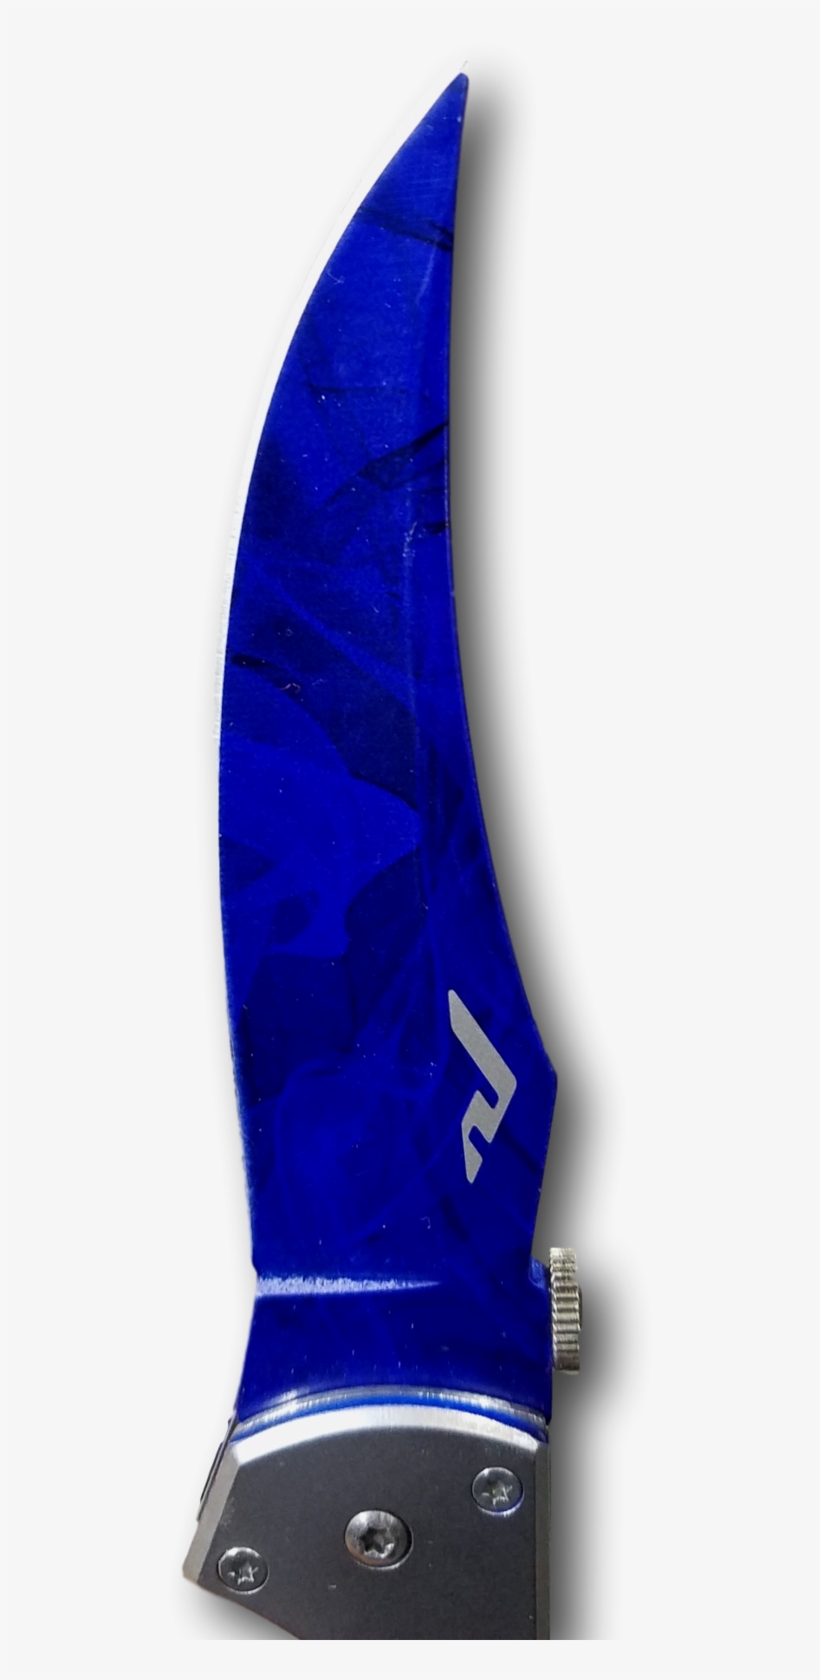 Blue Falchion Knife - Bowie Knife, transparent png #9869571